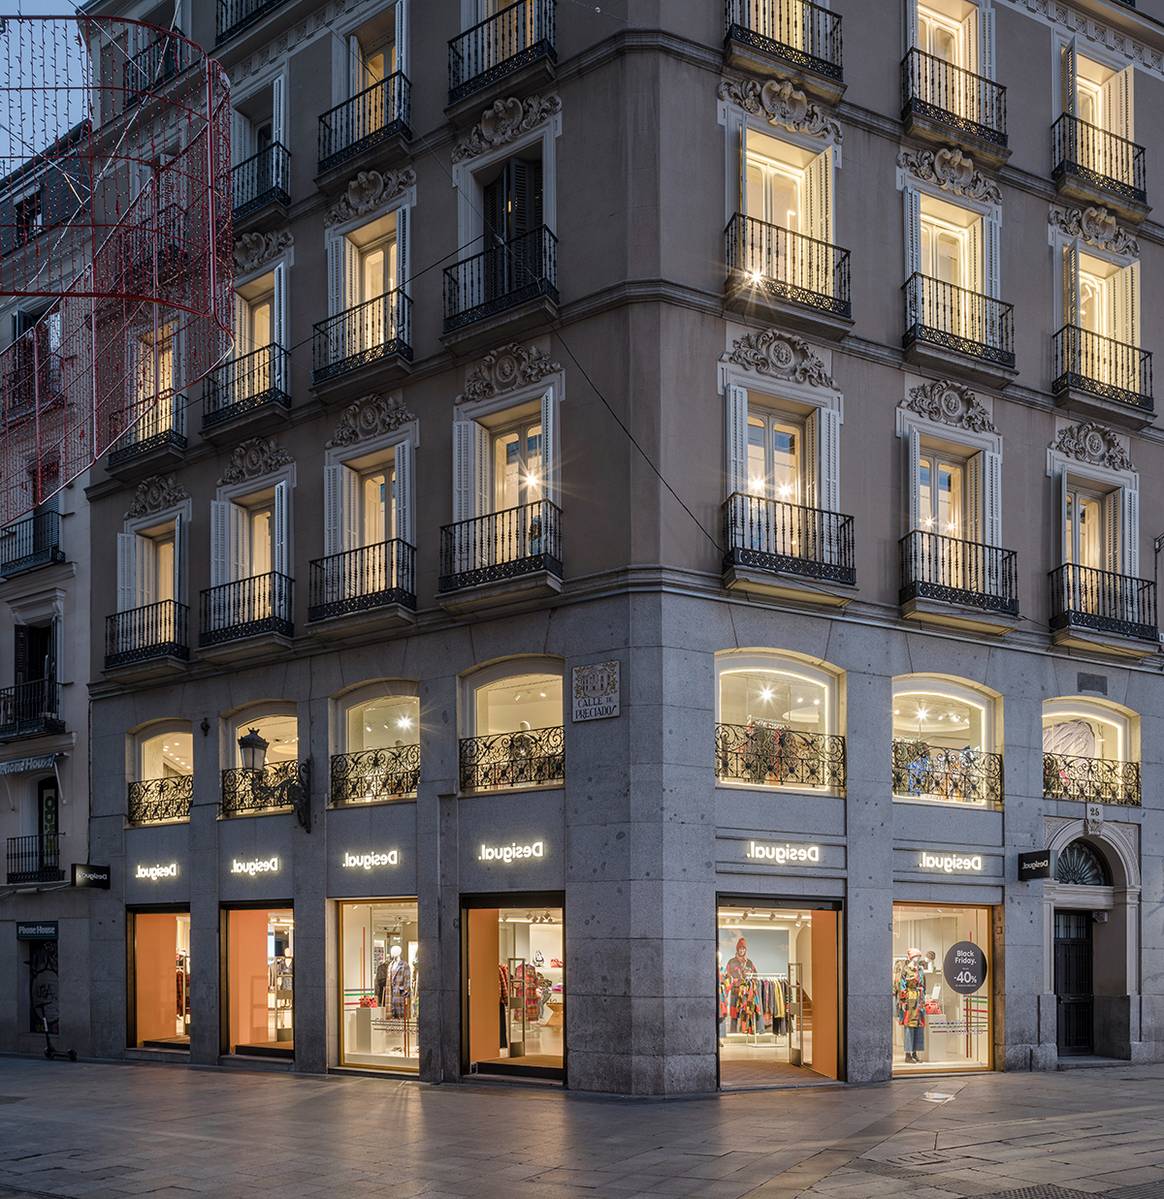 Photo Credits: Desigual, reinauguración de su flagship store de Preciados 25, Madrid. Fotografía de cortesía.